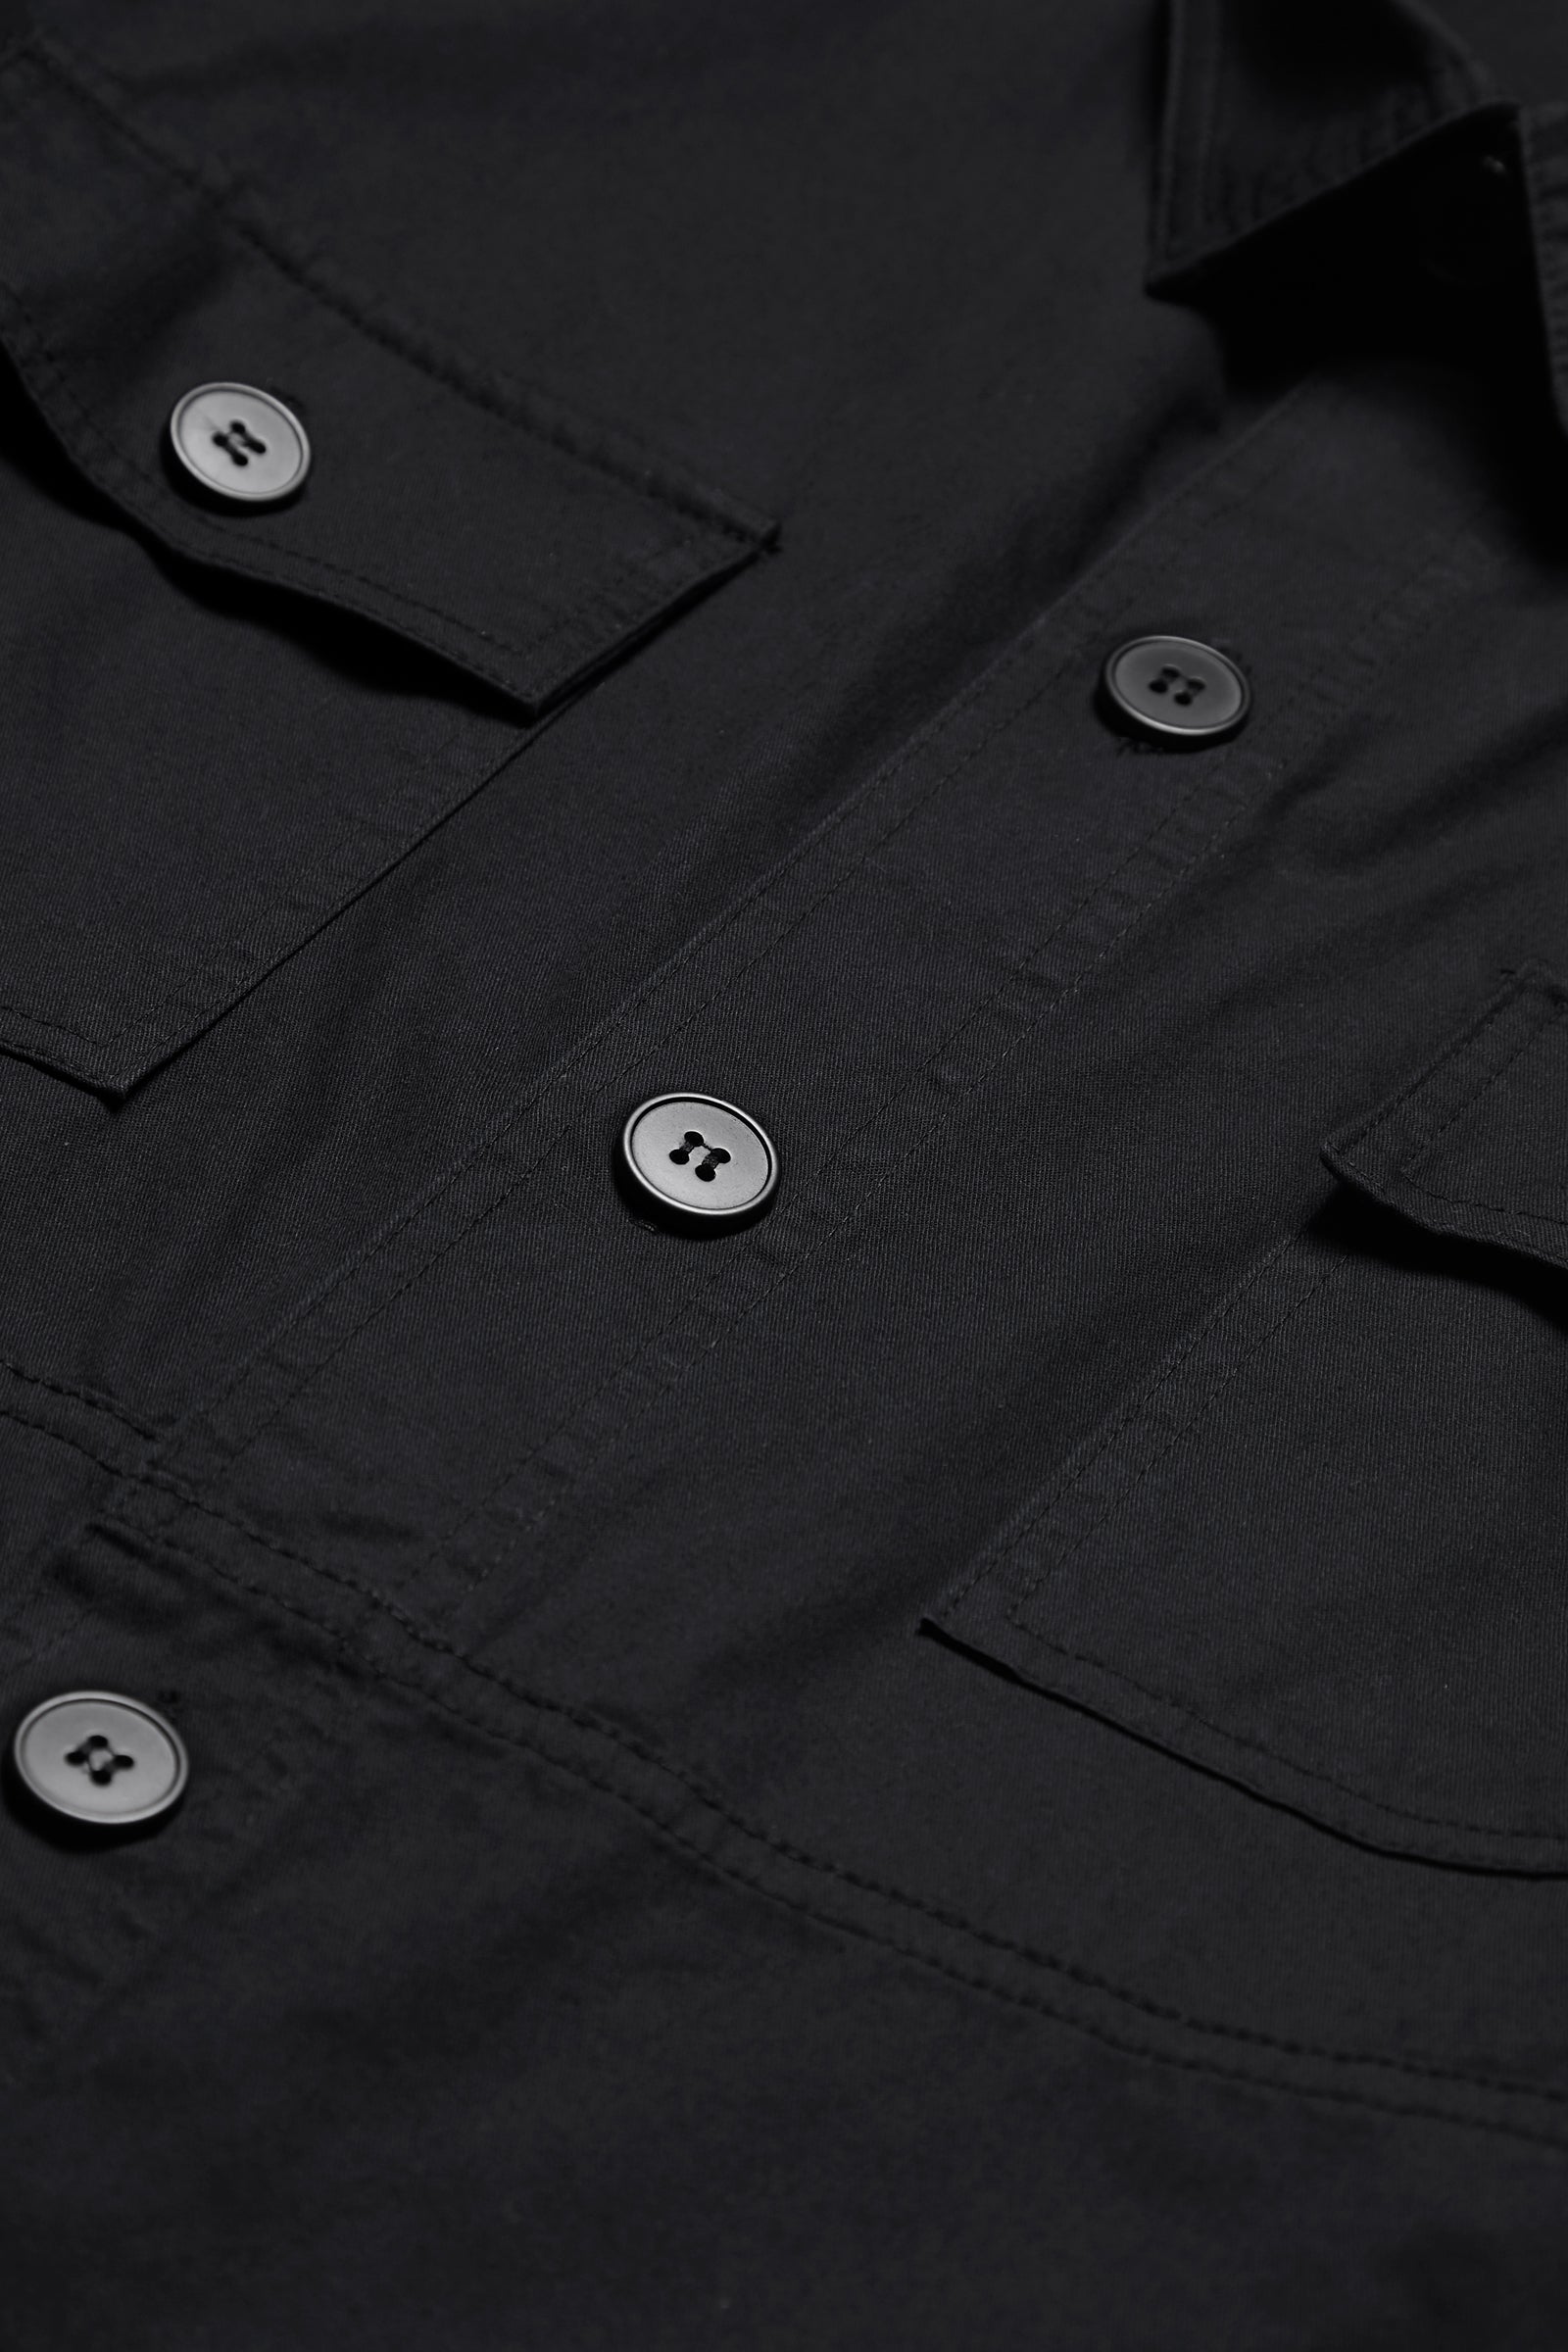 Blacksmith - Safari CPO Overshirt - Black